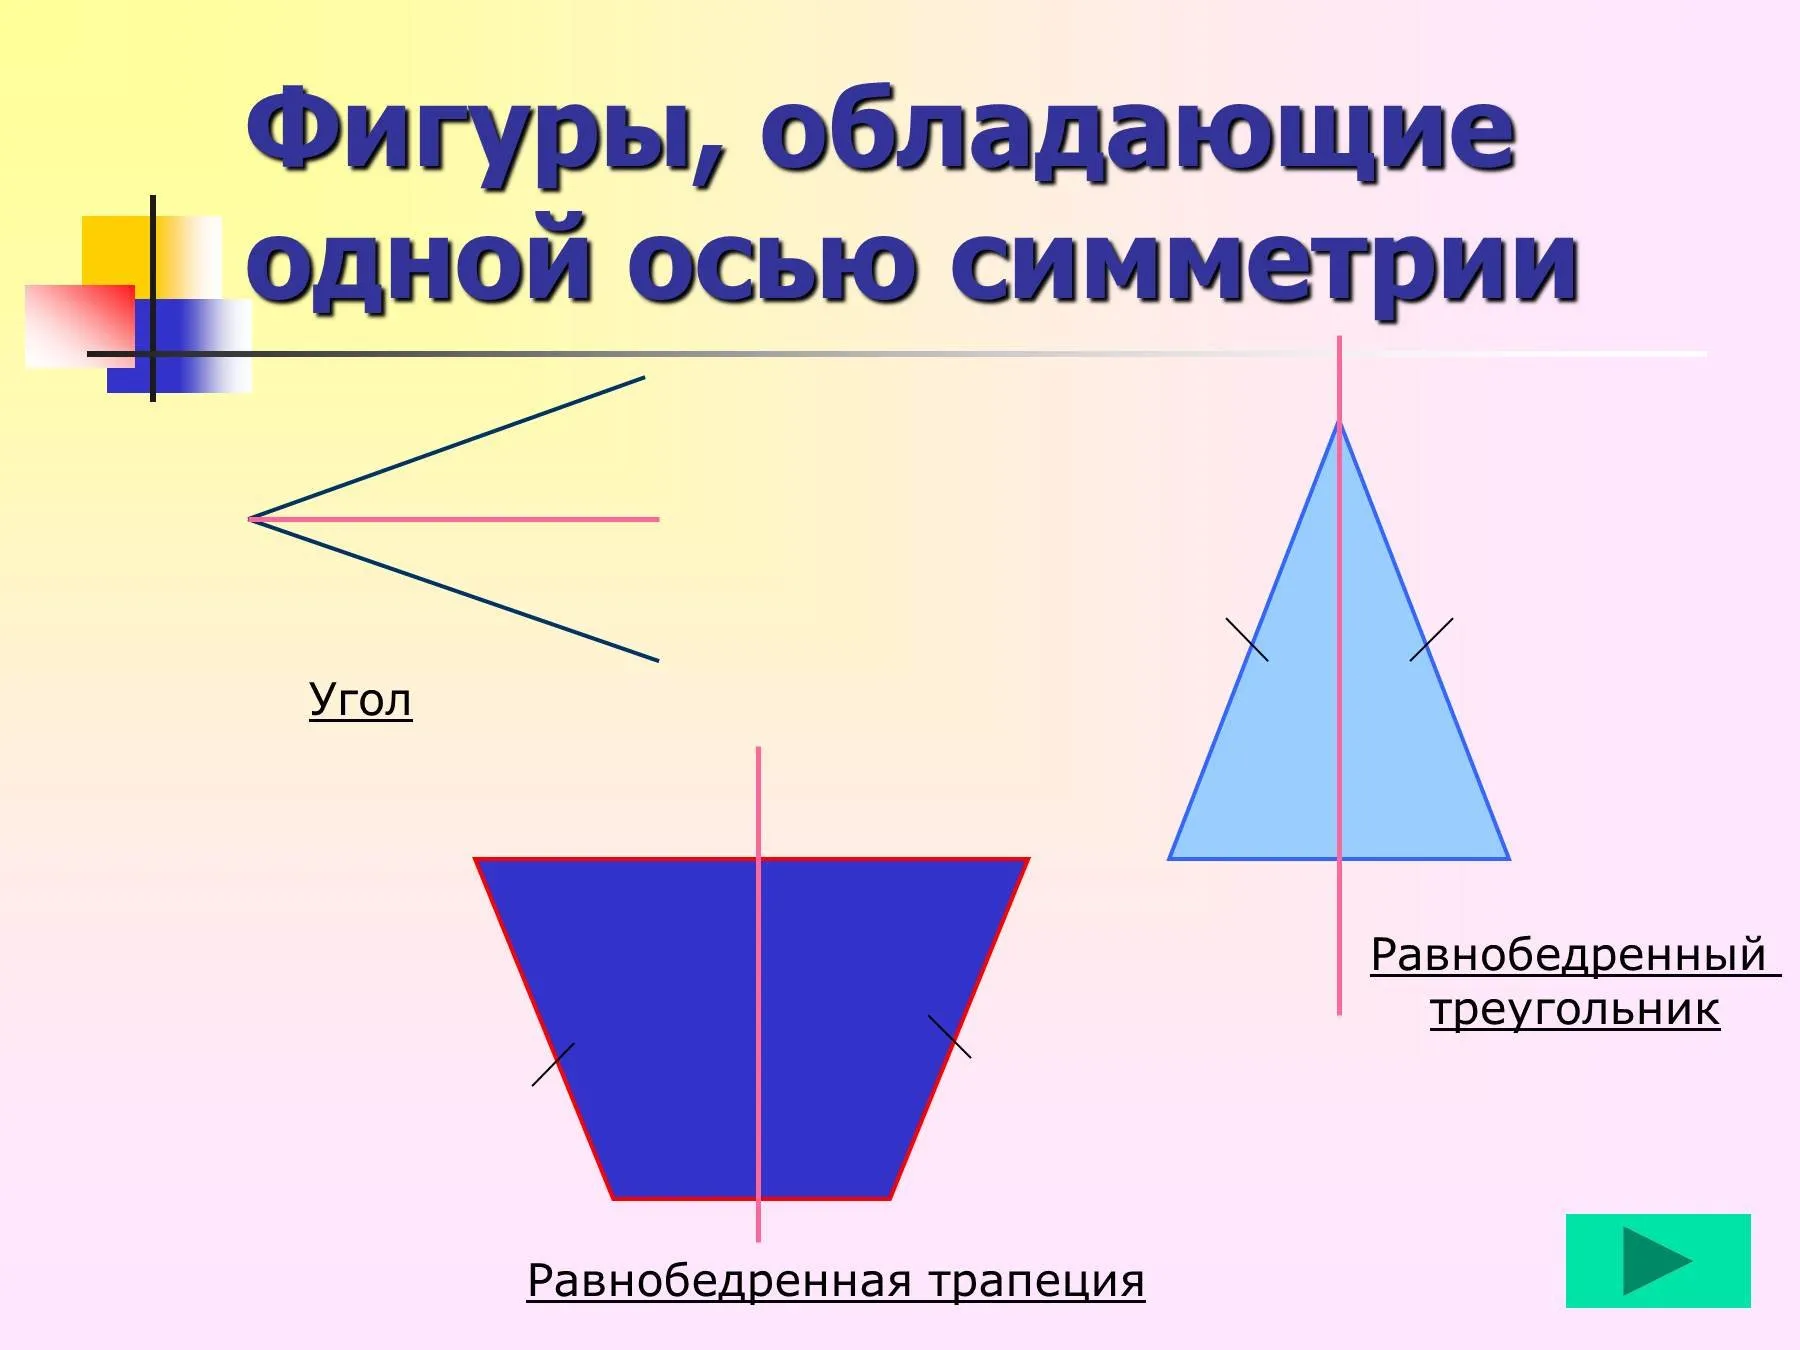 Равнобедренный треугольник имеет три оси симметрии верно. Симметричные фигуры. Фигуры обладающие одной осью симметрии. Геометрические фигуры обладающие осевой симметрией. Фигуры симметричные оси.